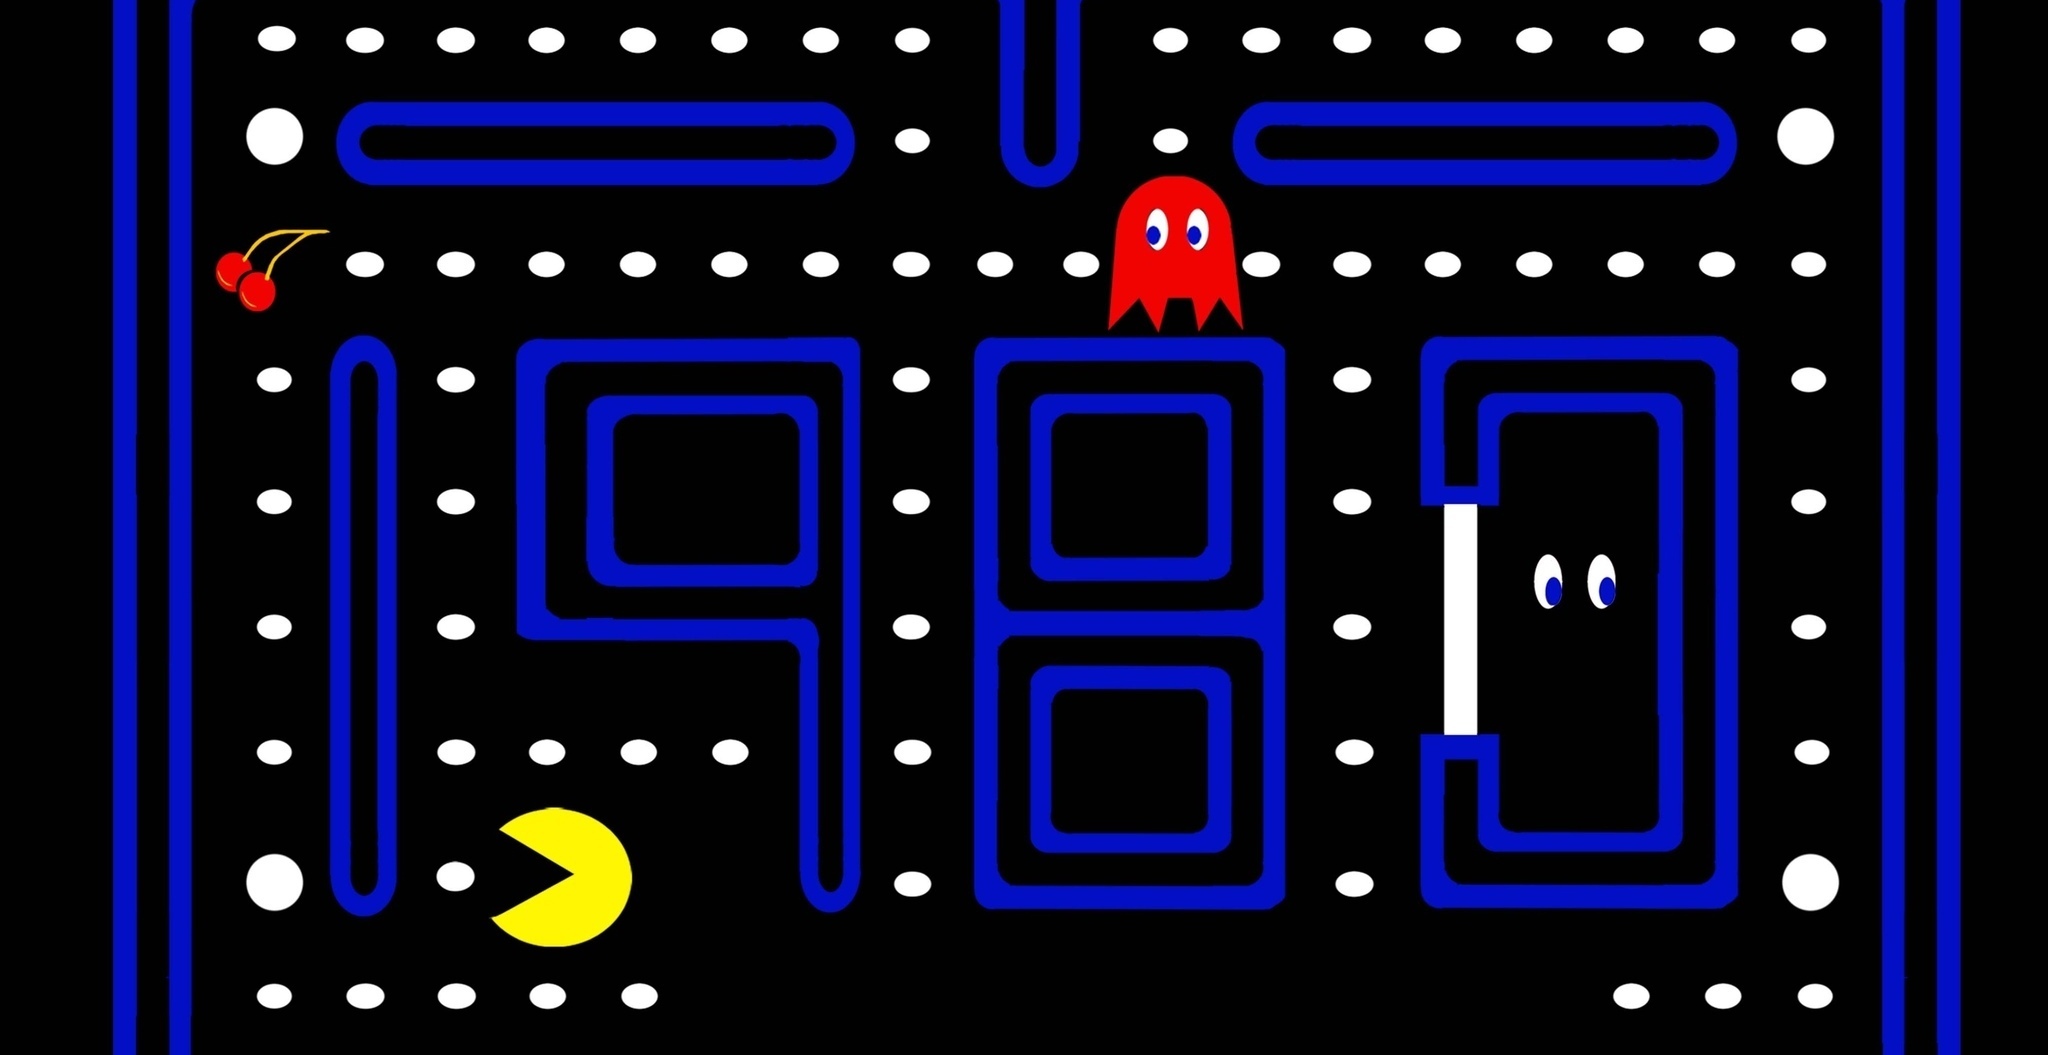 Pac man game. Пакман игра. Пакман Старая игра. Первая компьютерная игра. Pacman первая игра.